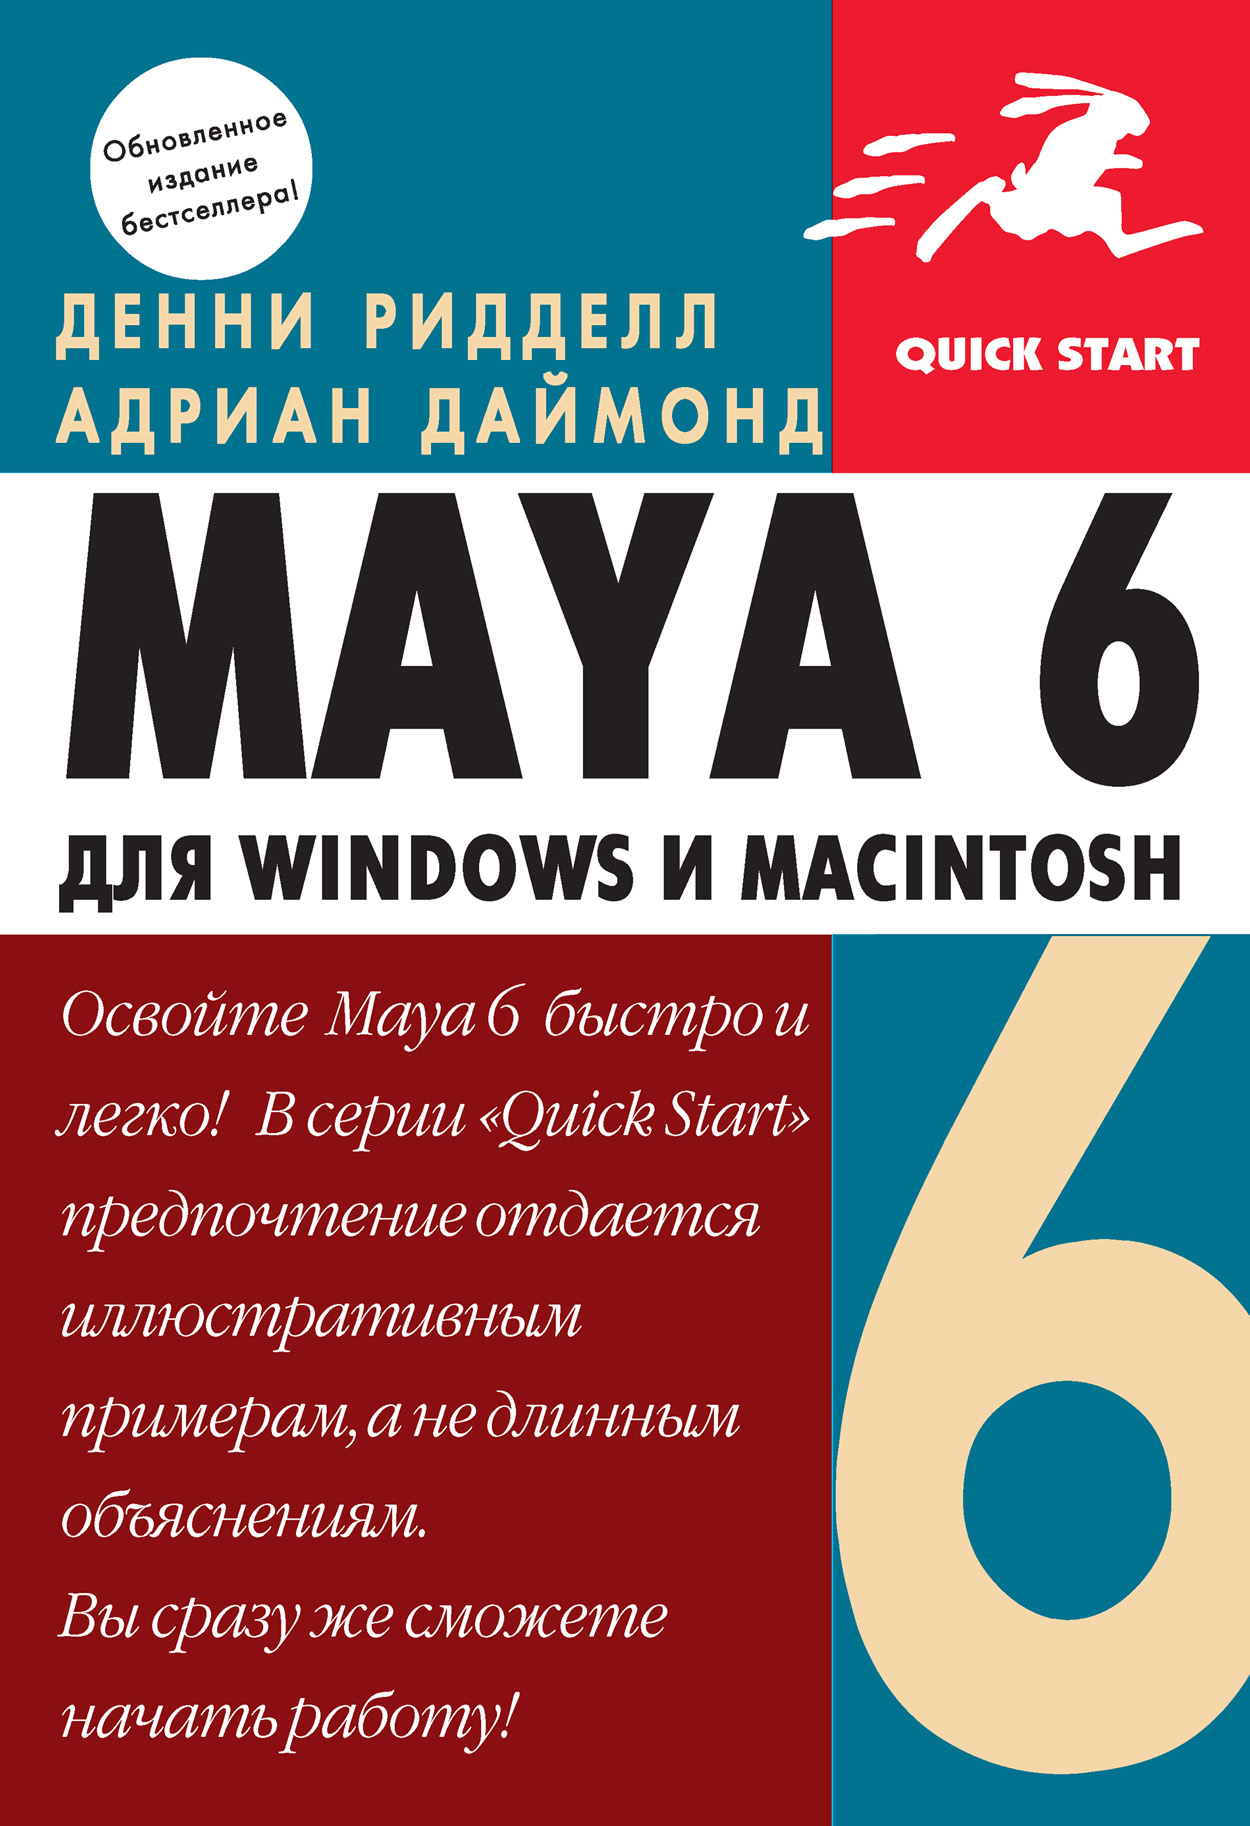 Книга  Maya 6 для Windows и Macintosh созданная Адриан Даймонд, Денни Ридделл, Мария Талачева, А. В. Хаванов может относится к жанру зарубежная компьютерная литература, программы. Стоимость электронной книги Maya 6 для Windows и Macintosh с идентификатором 436325 составляет 200.00 руб.